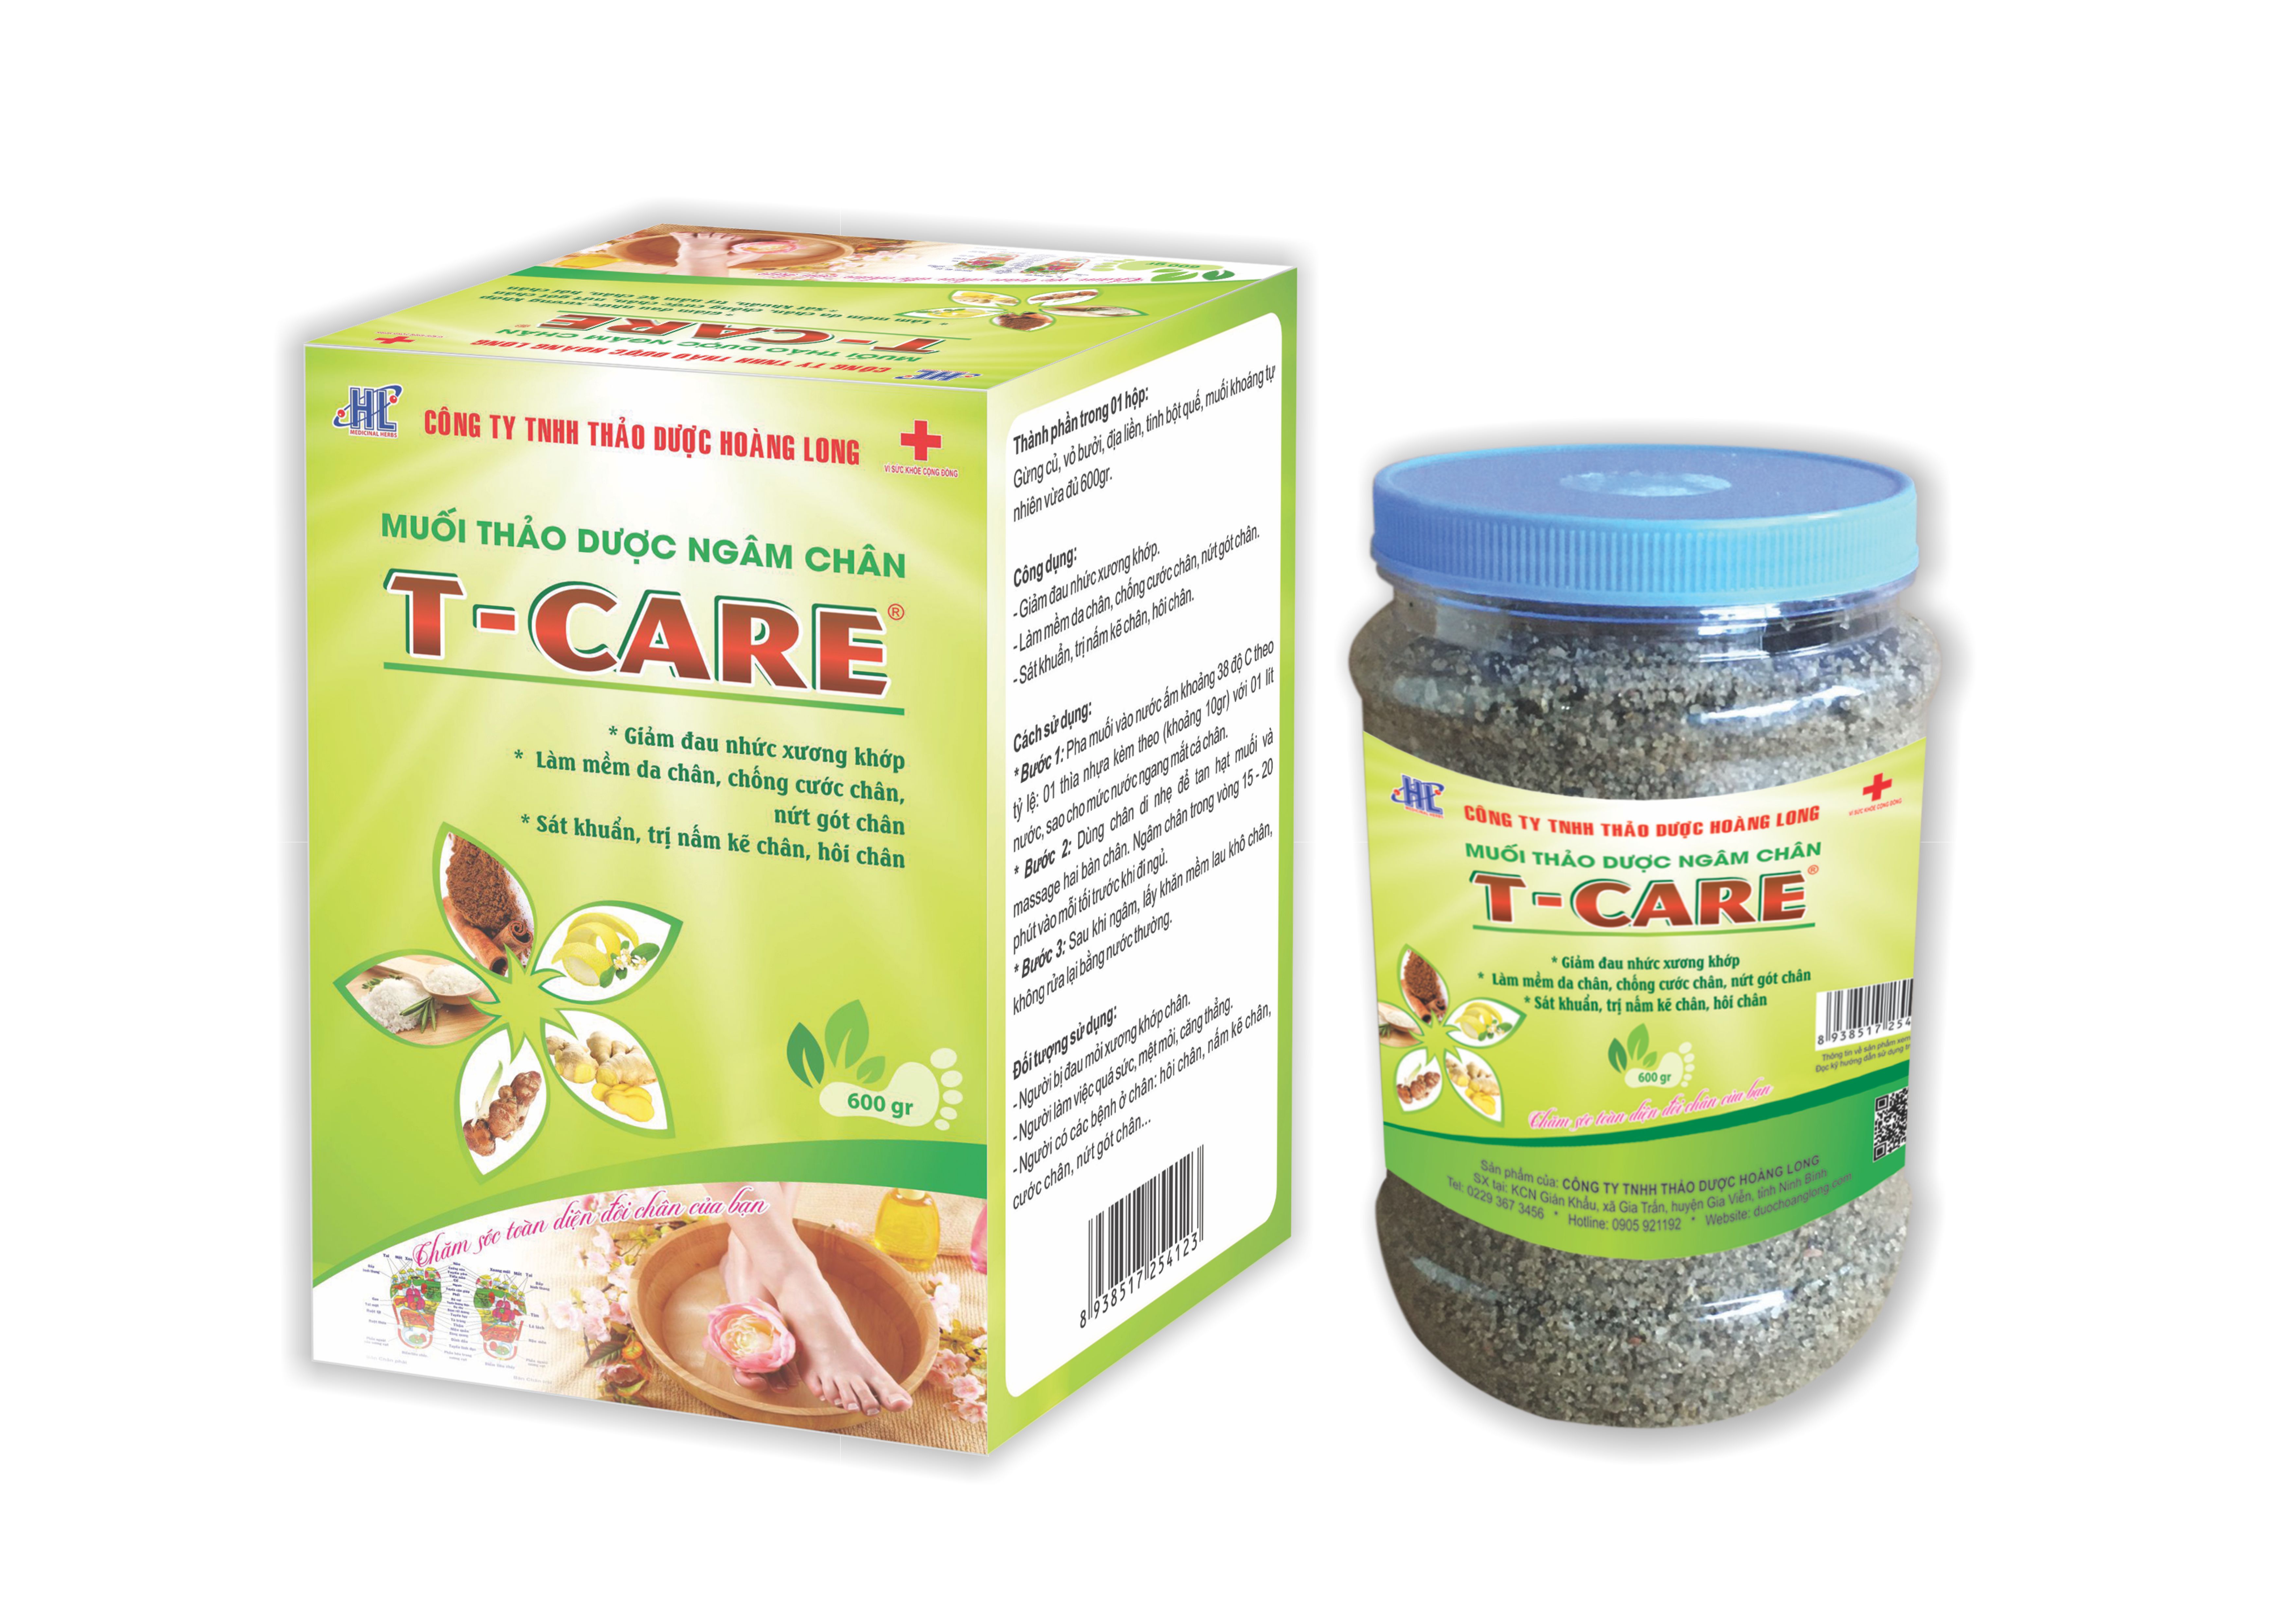 Muối Thảo Dược Ngâm Chân T-Care 600gr (Chứa bốn loại thảo dược và muối khoáng, là phương pháp hỗ trợ trị liệu đông y cổ truyền, chăm sóc toàn diện sức khỏe và đôi chân của bạn)